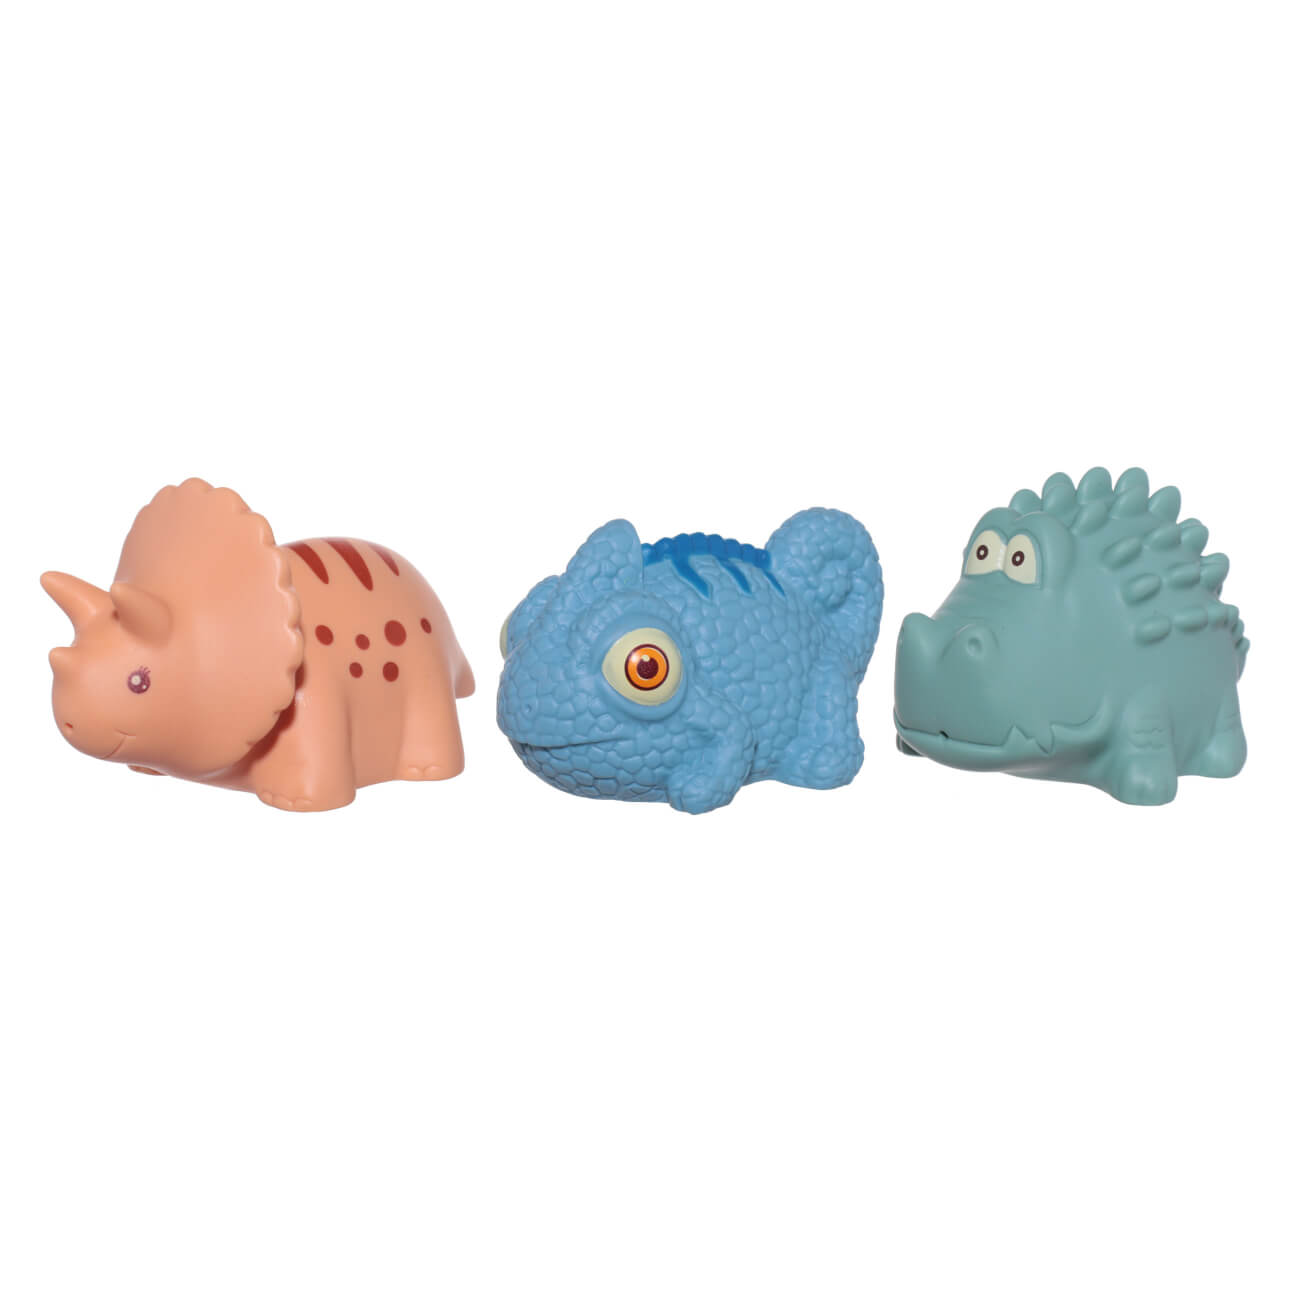 Набор игрушек для купания, 3 пр, ПВХ, цветной, Хамелеон/Динозавр/Крокодил, Kiddy динозавр робот радиоуправляемый